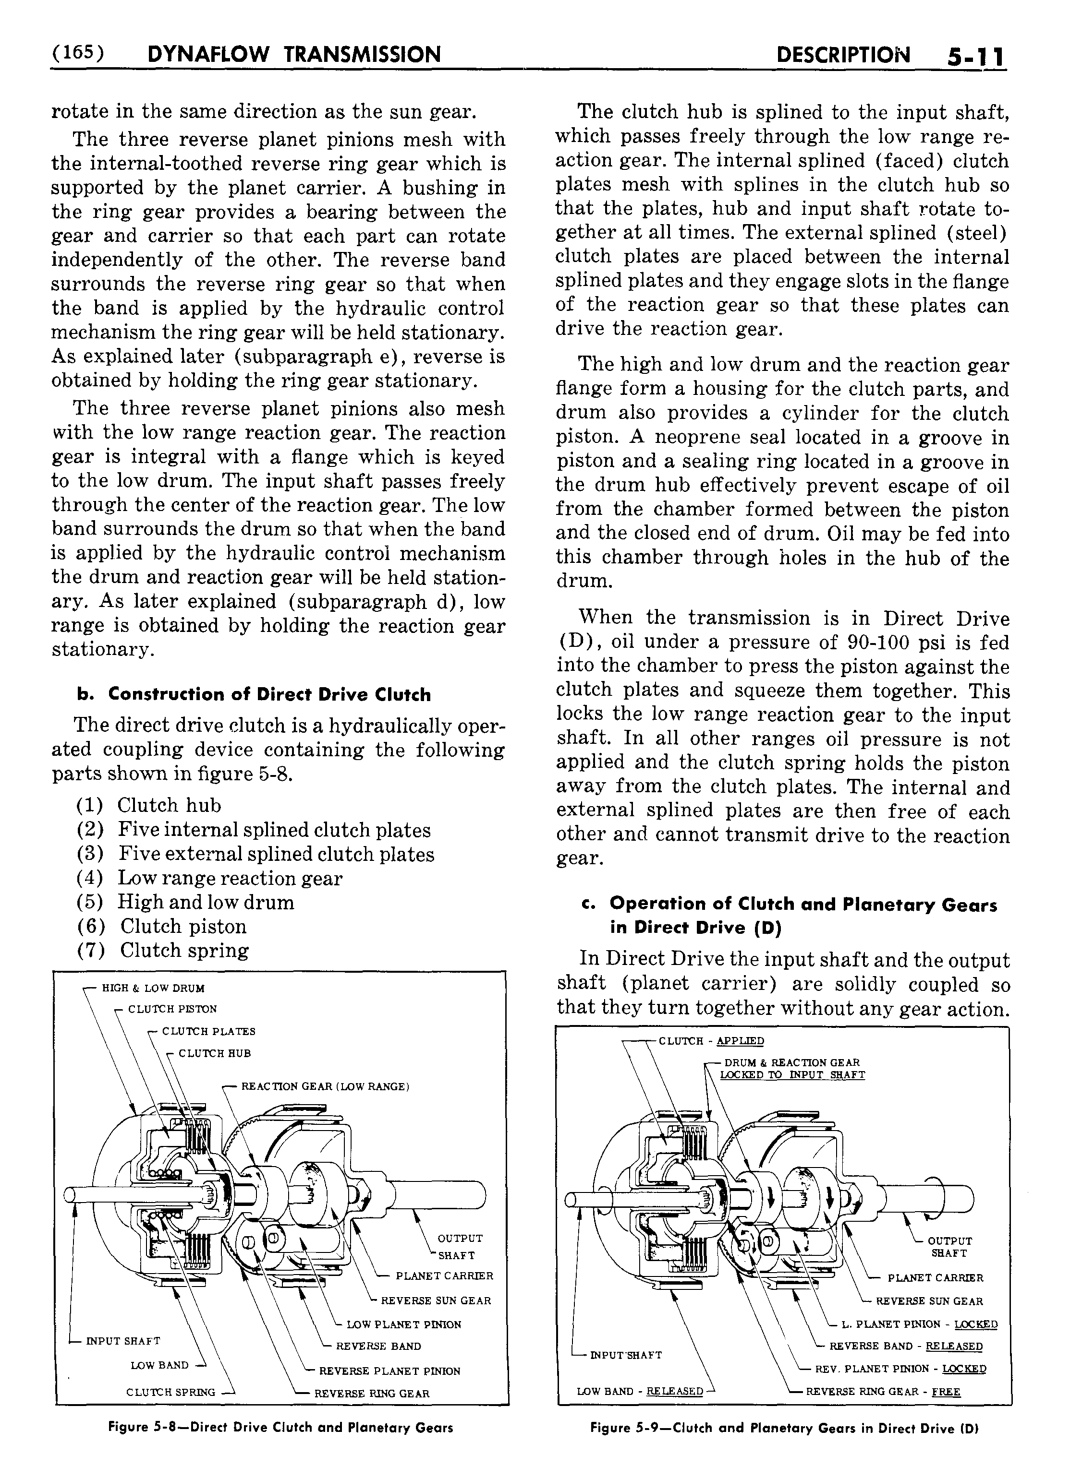 n_06 1954 Buick Shop Manual - Dynaflow-011-011.jpg